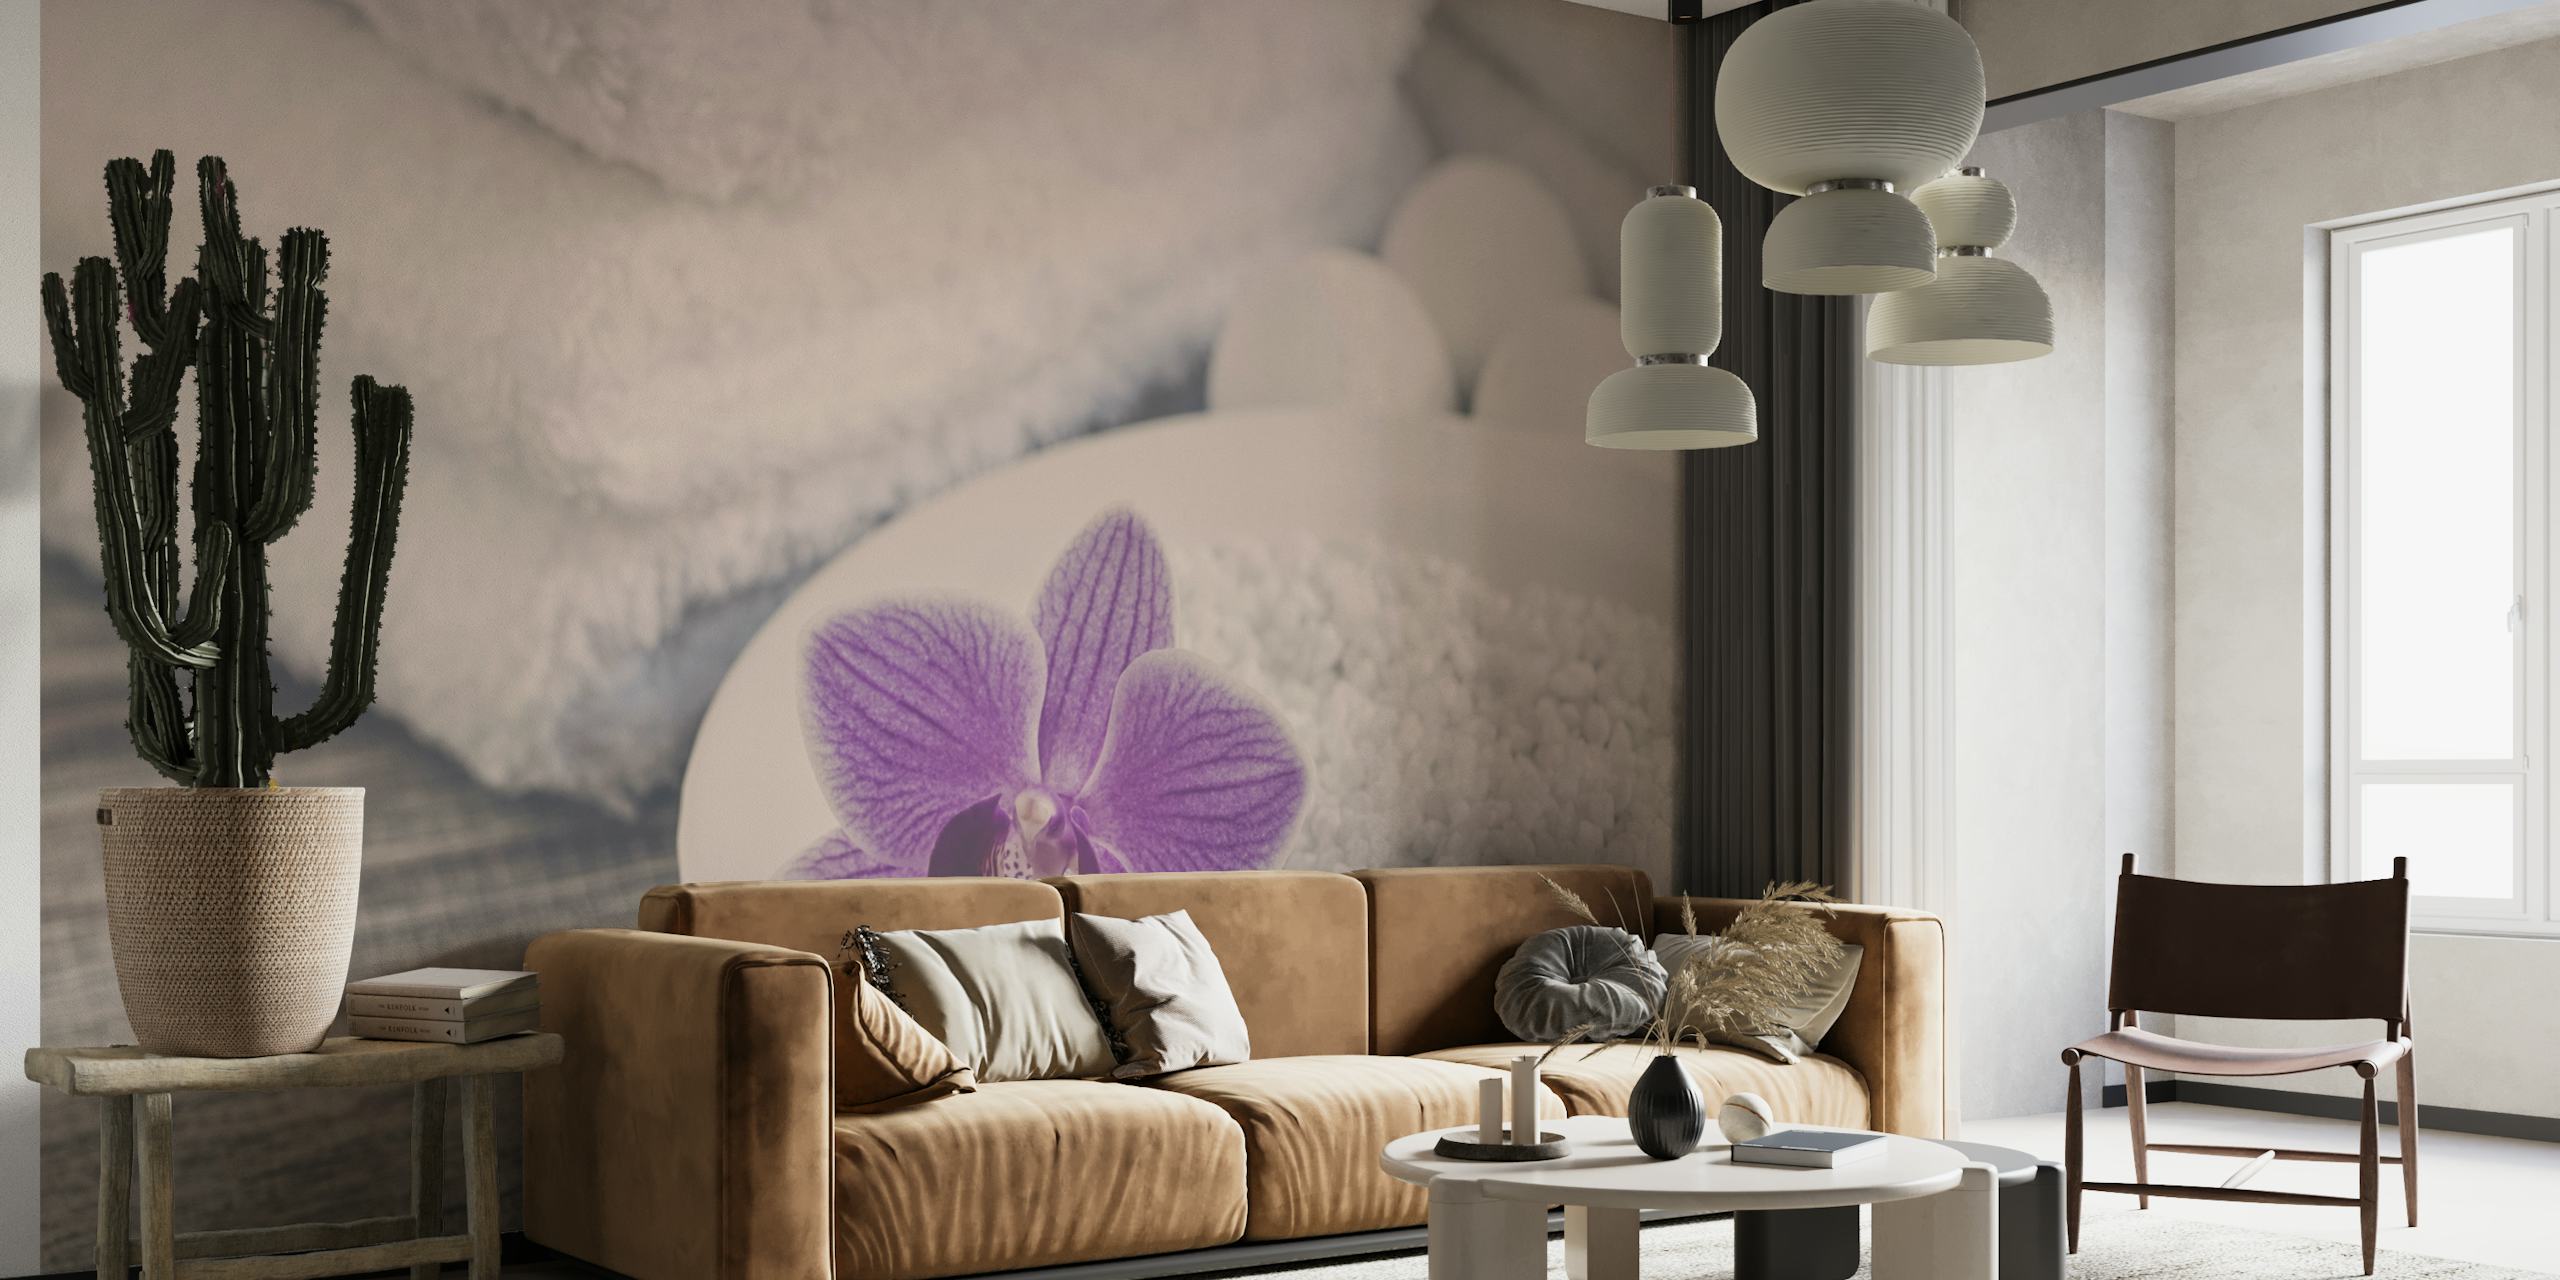 Fotobehang met een paarse orchidee op wit zand, zachte handdoeken op de achtergrond